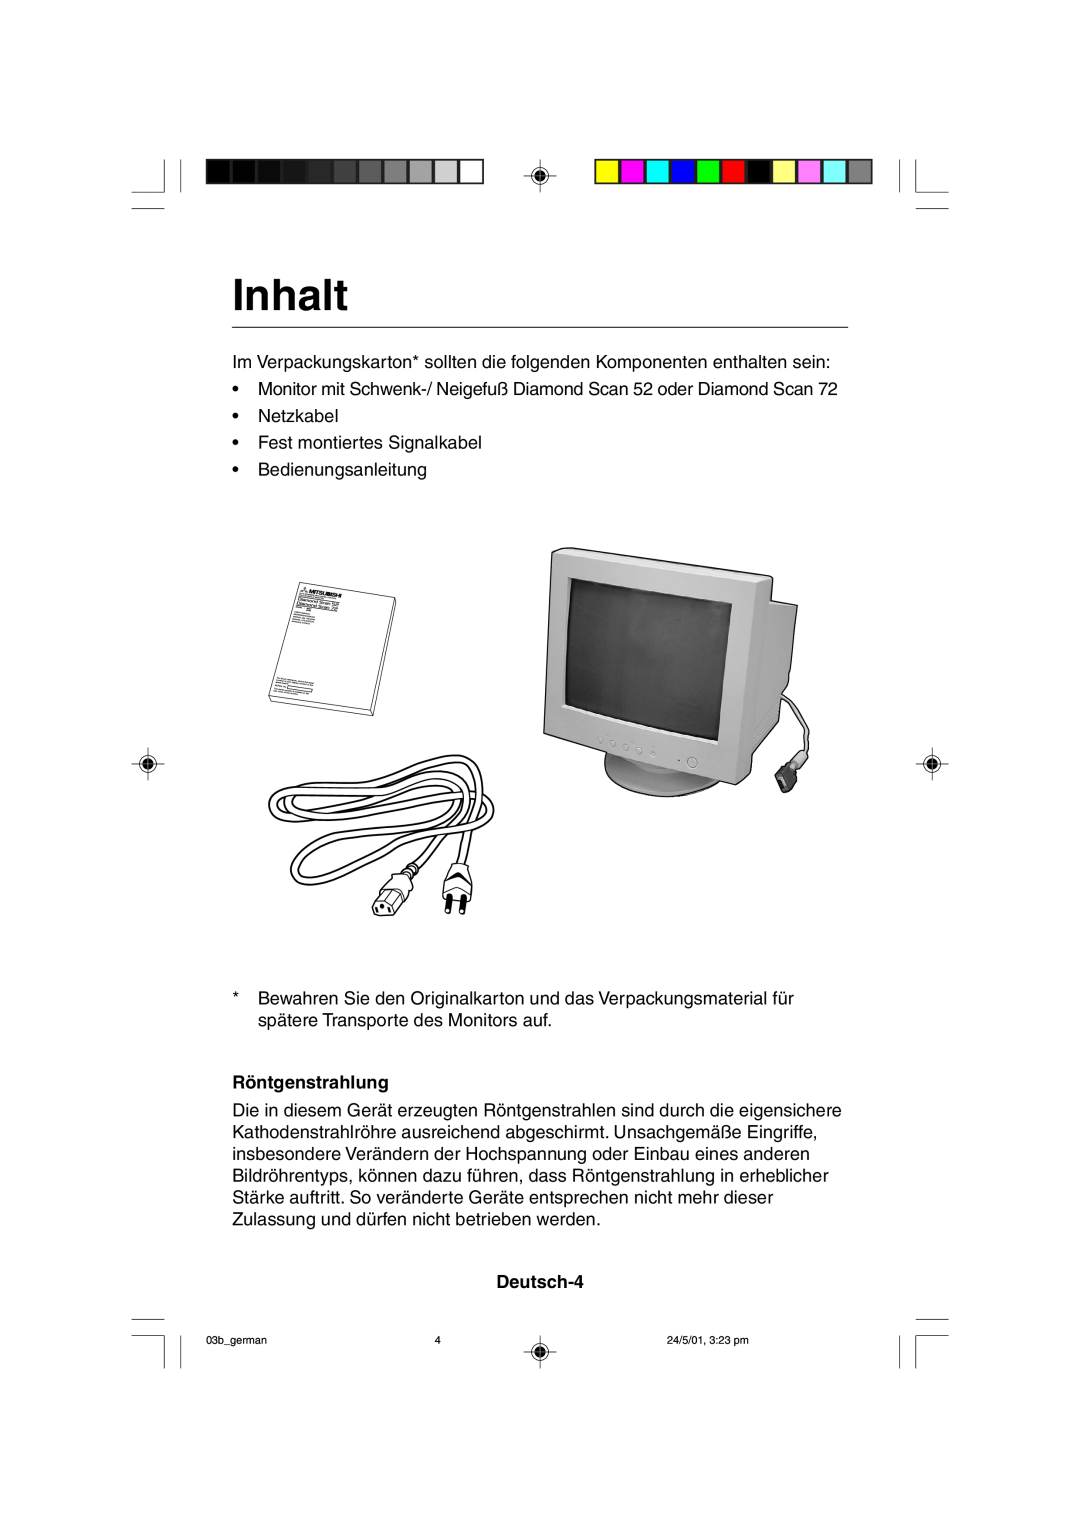 Mitsubishi Electronics M557 user manual Inhalt, Röntgenstrahlung, Deutsch-4 